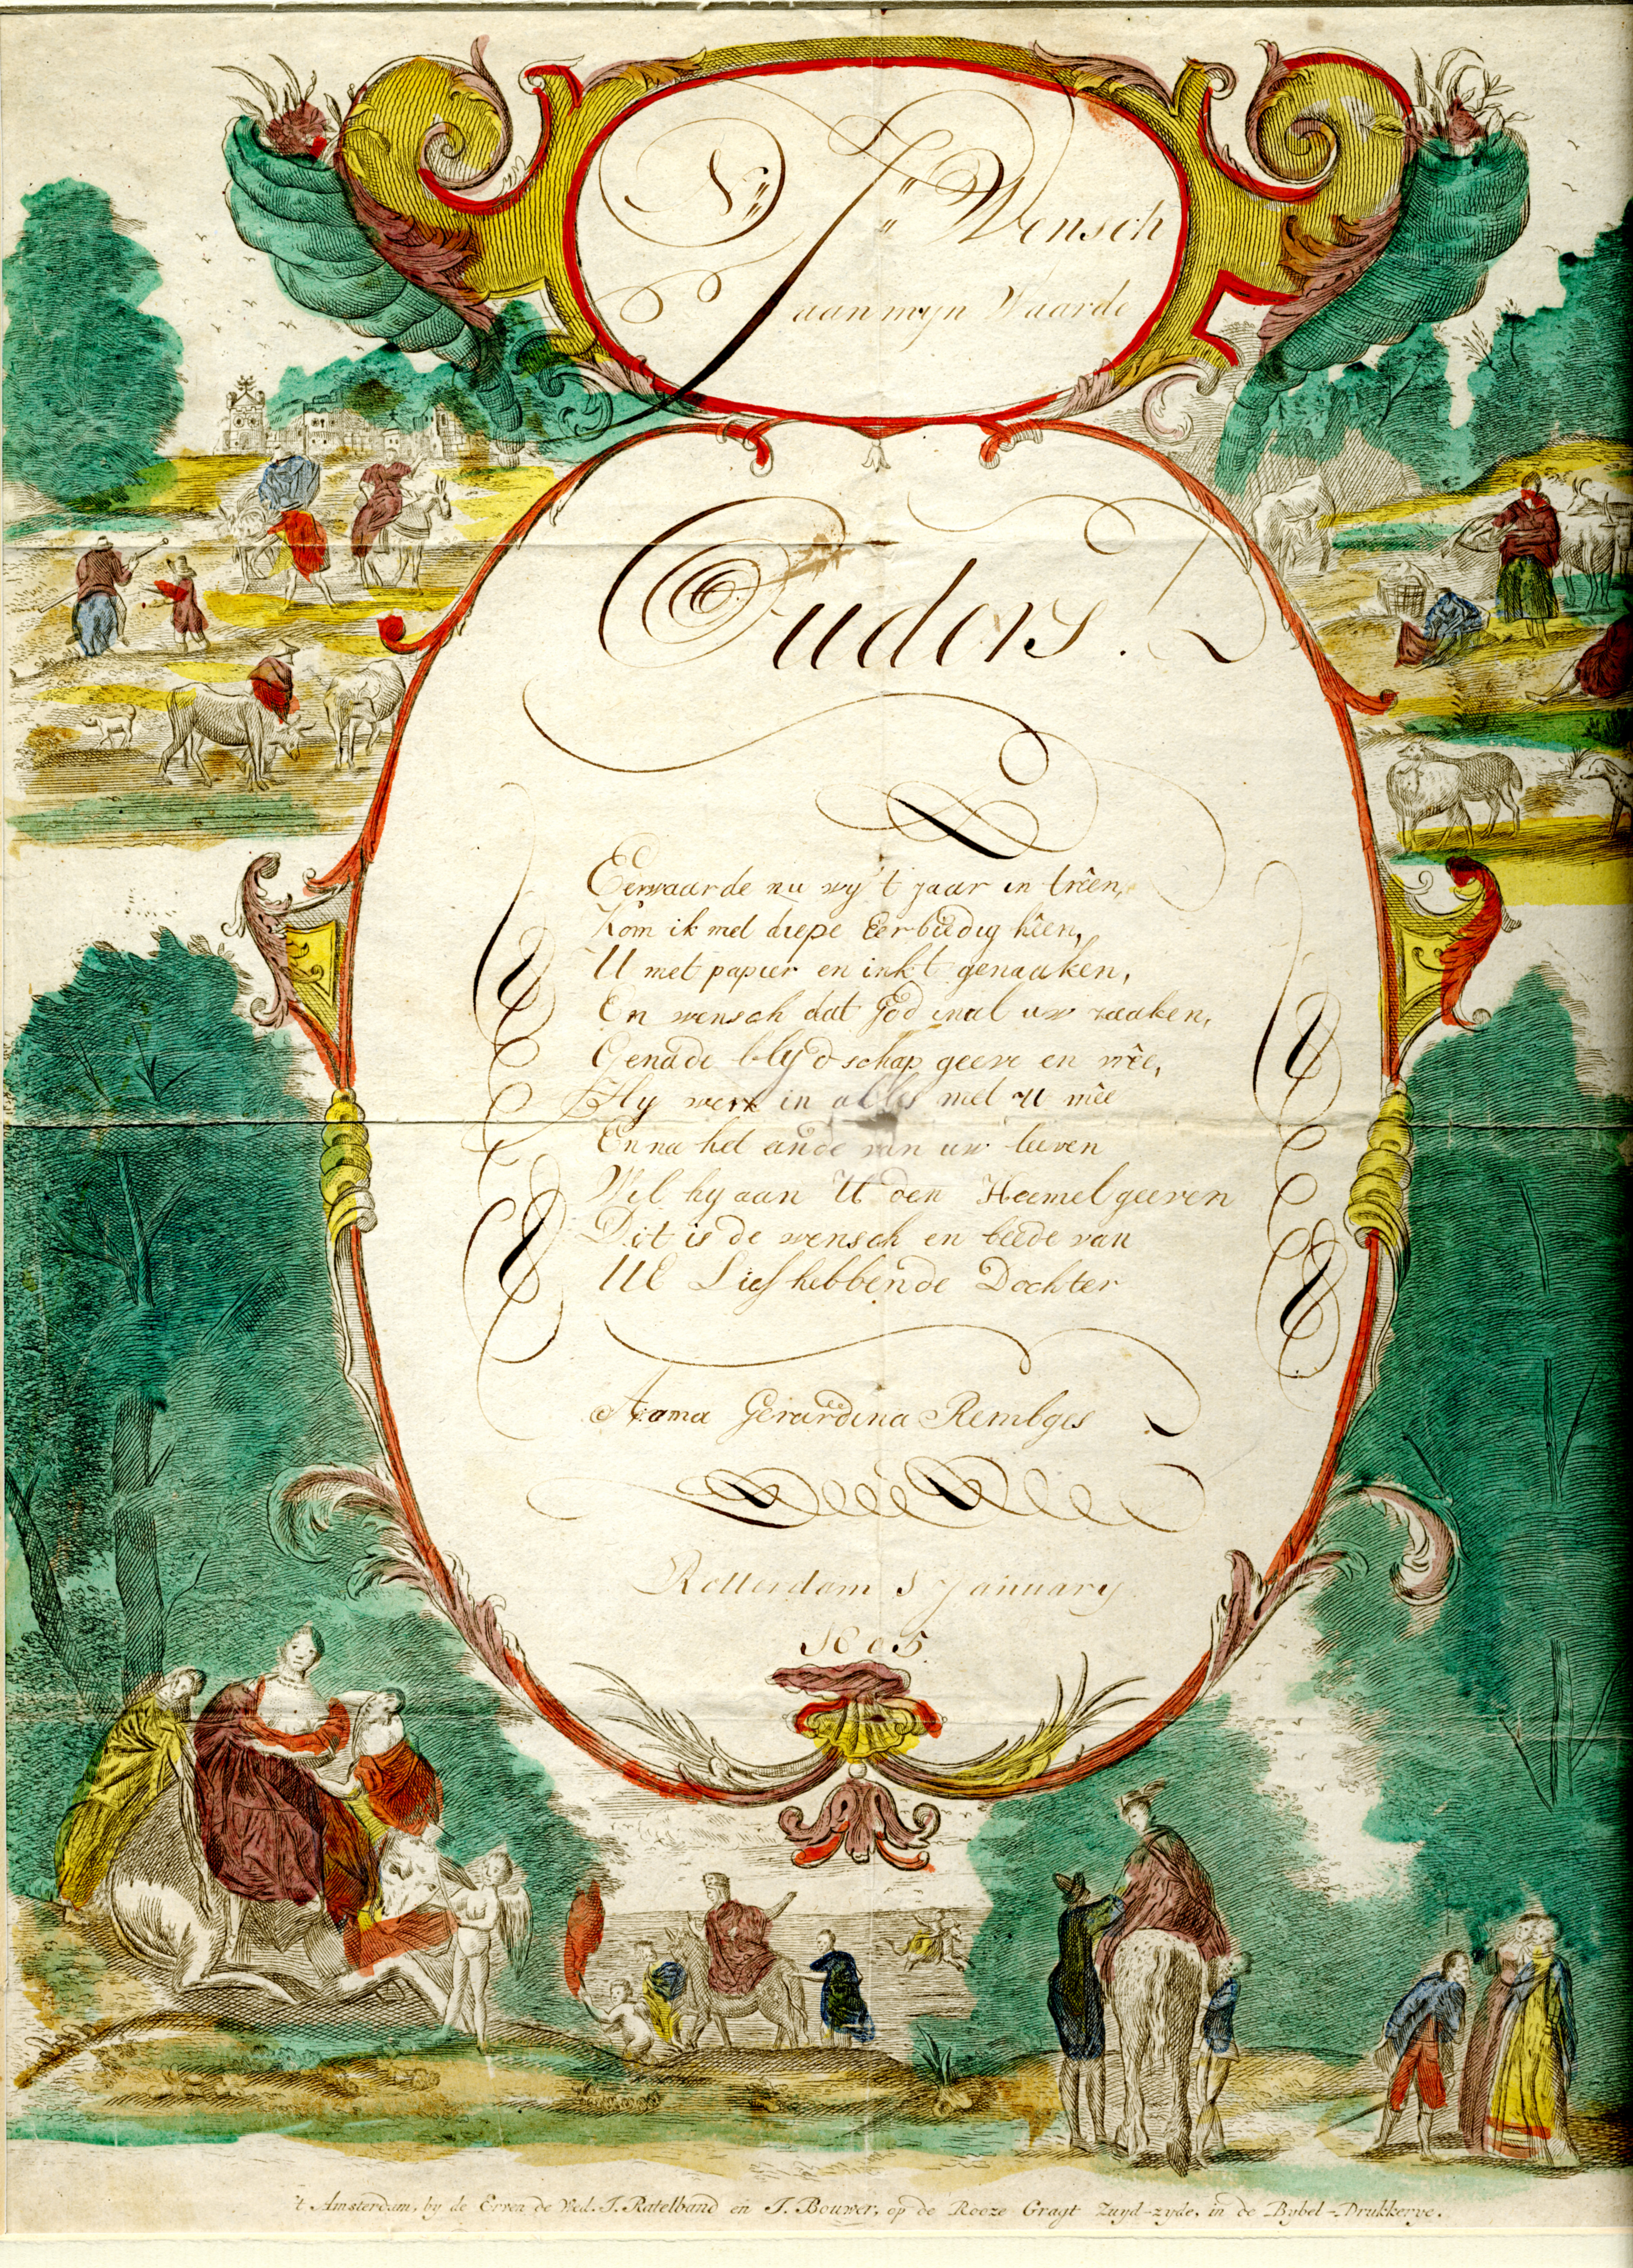 Ingekleurde gravure met nieuwjaarswens van A.G. Rembges aan haar ouders, 1805.